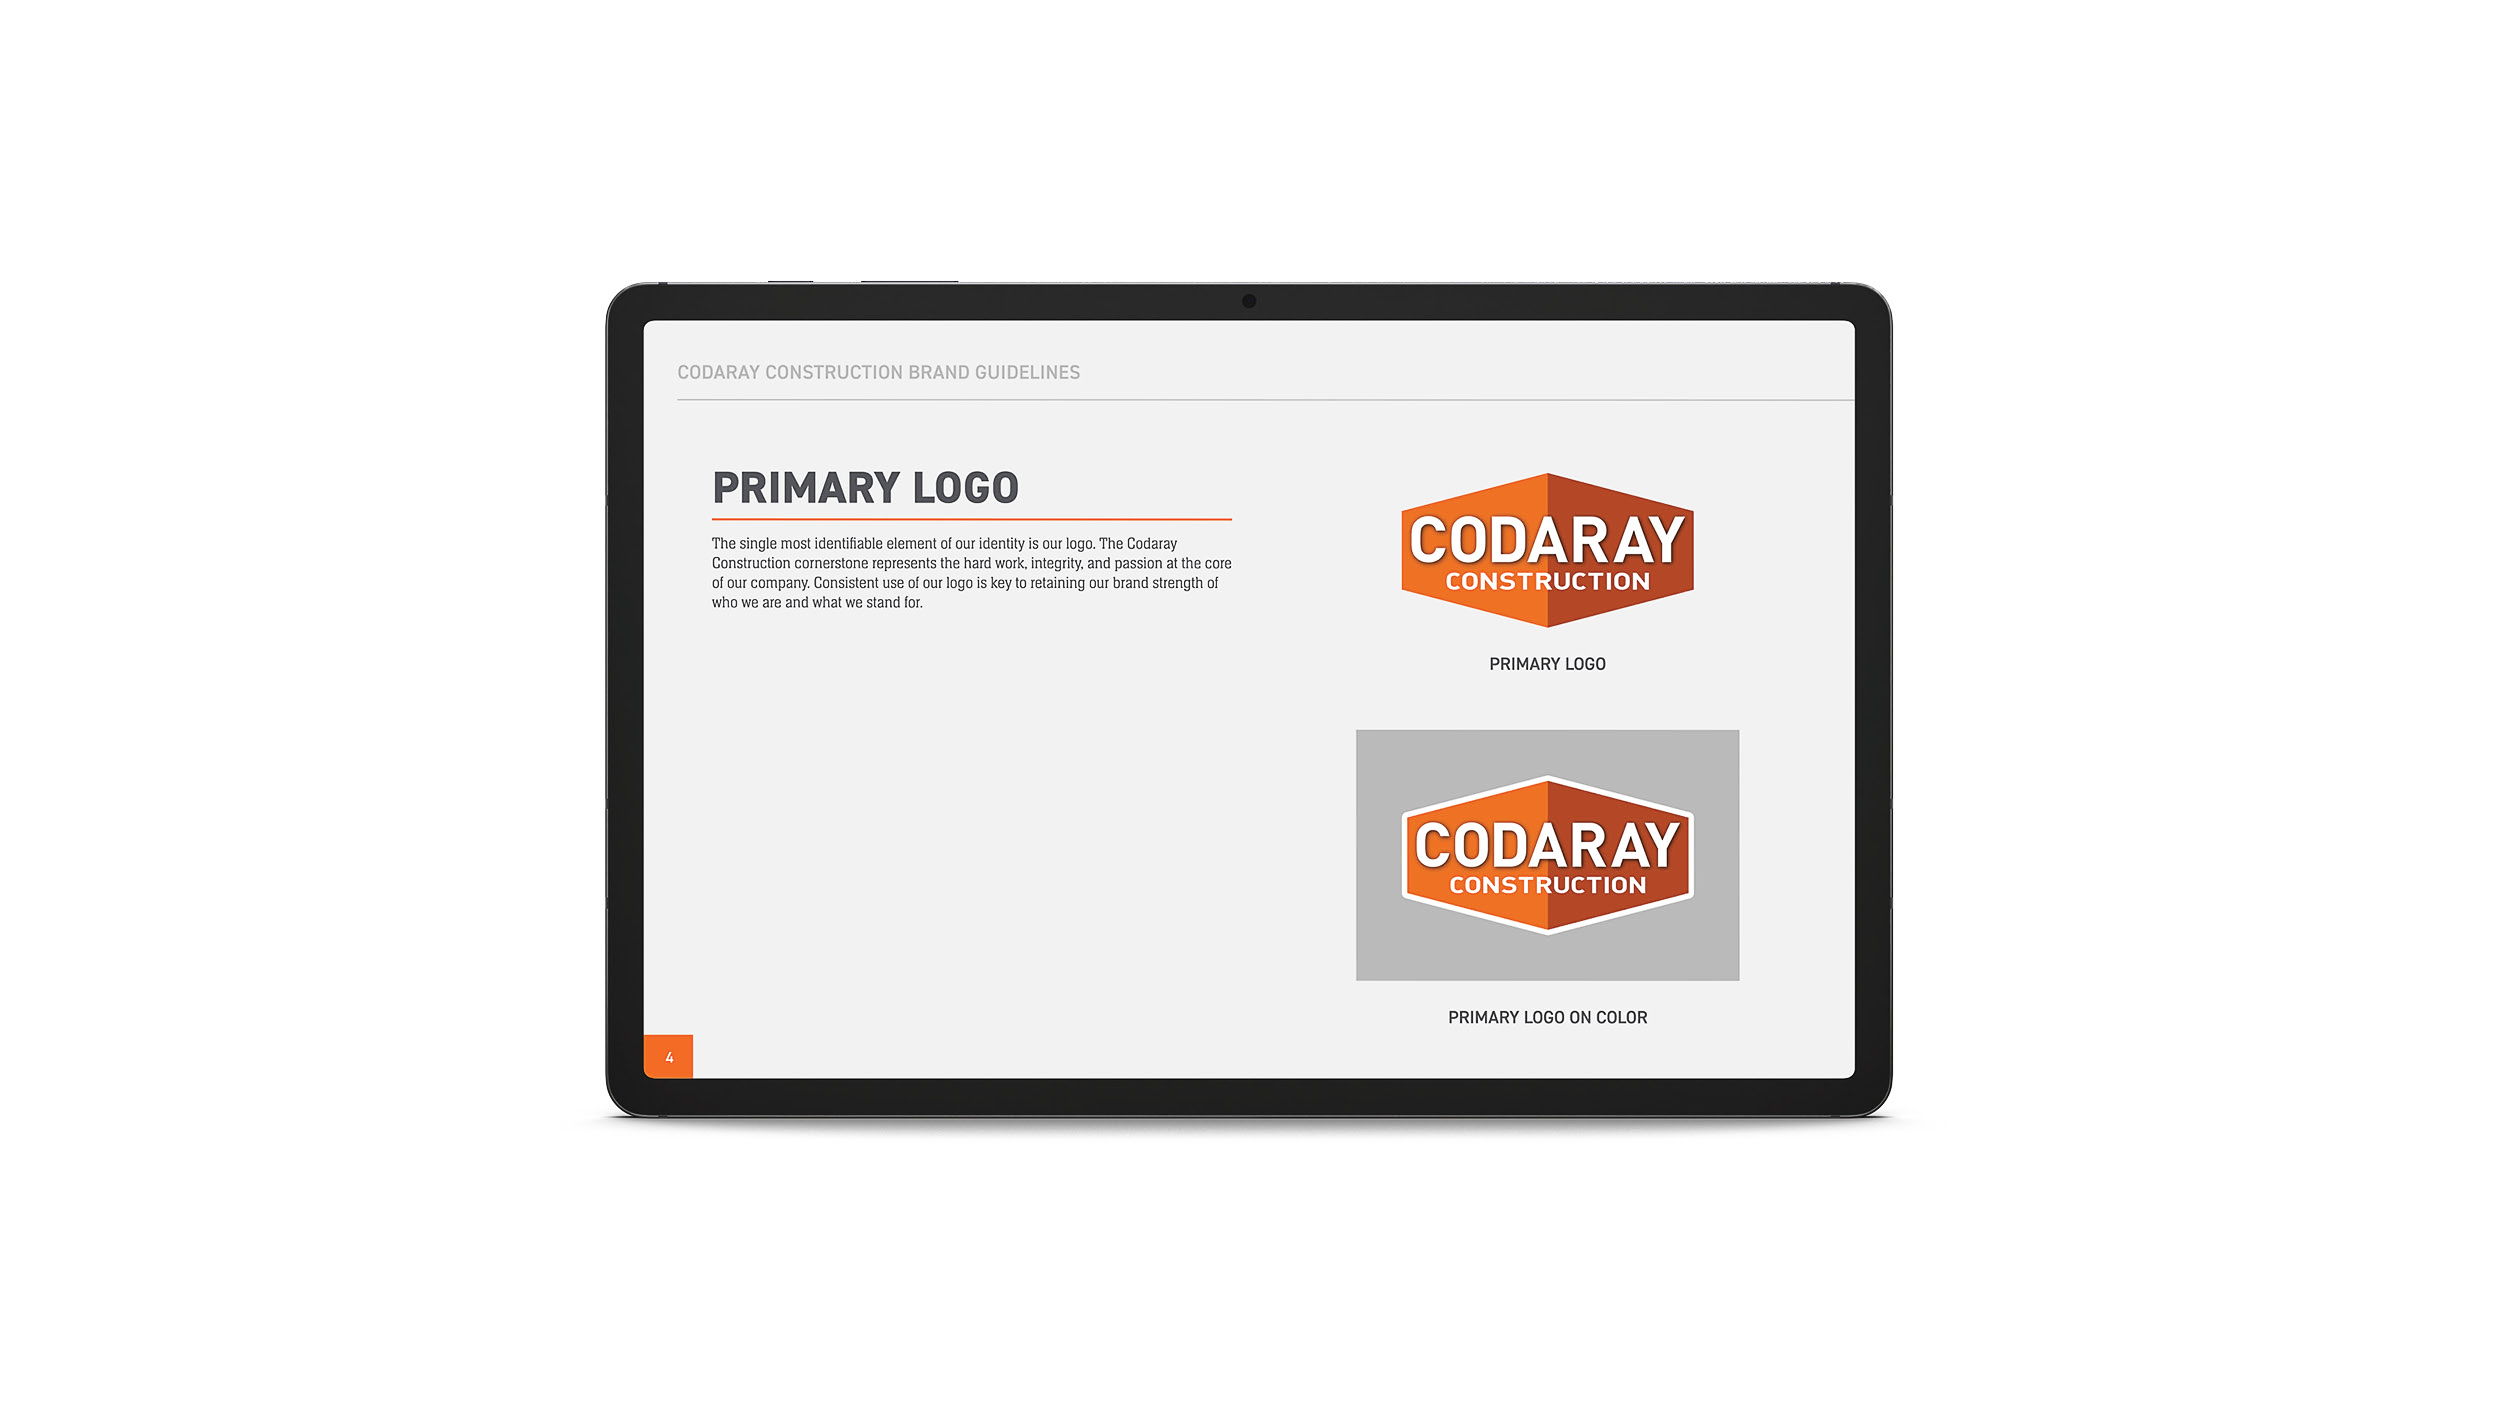 Codaray Construction Brand Guide